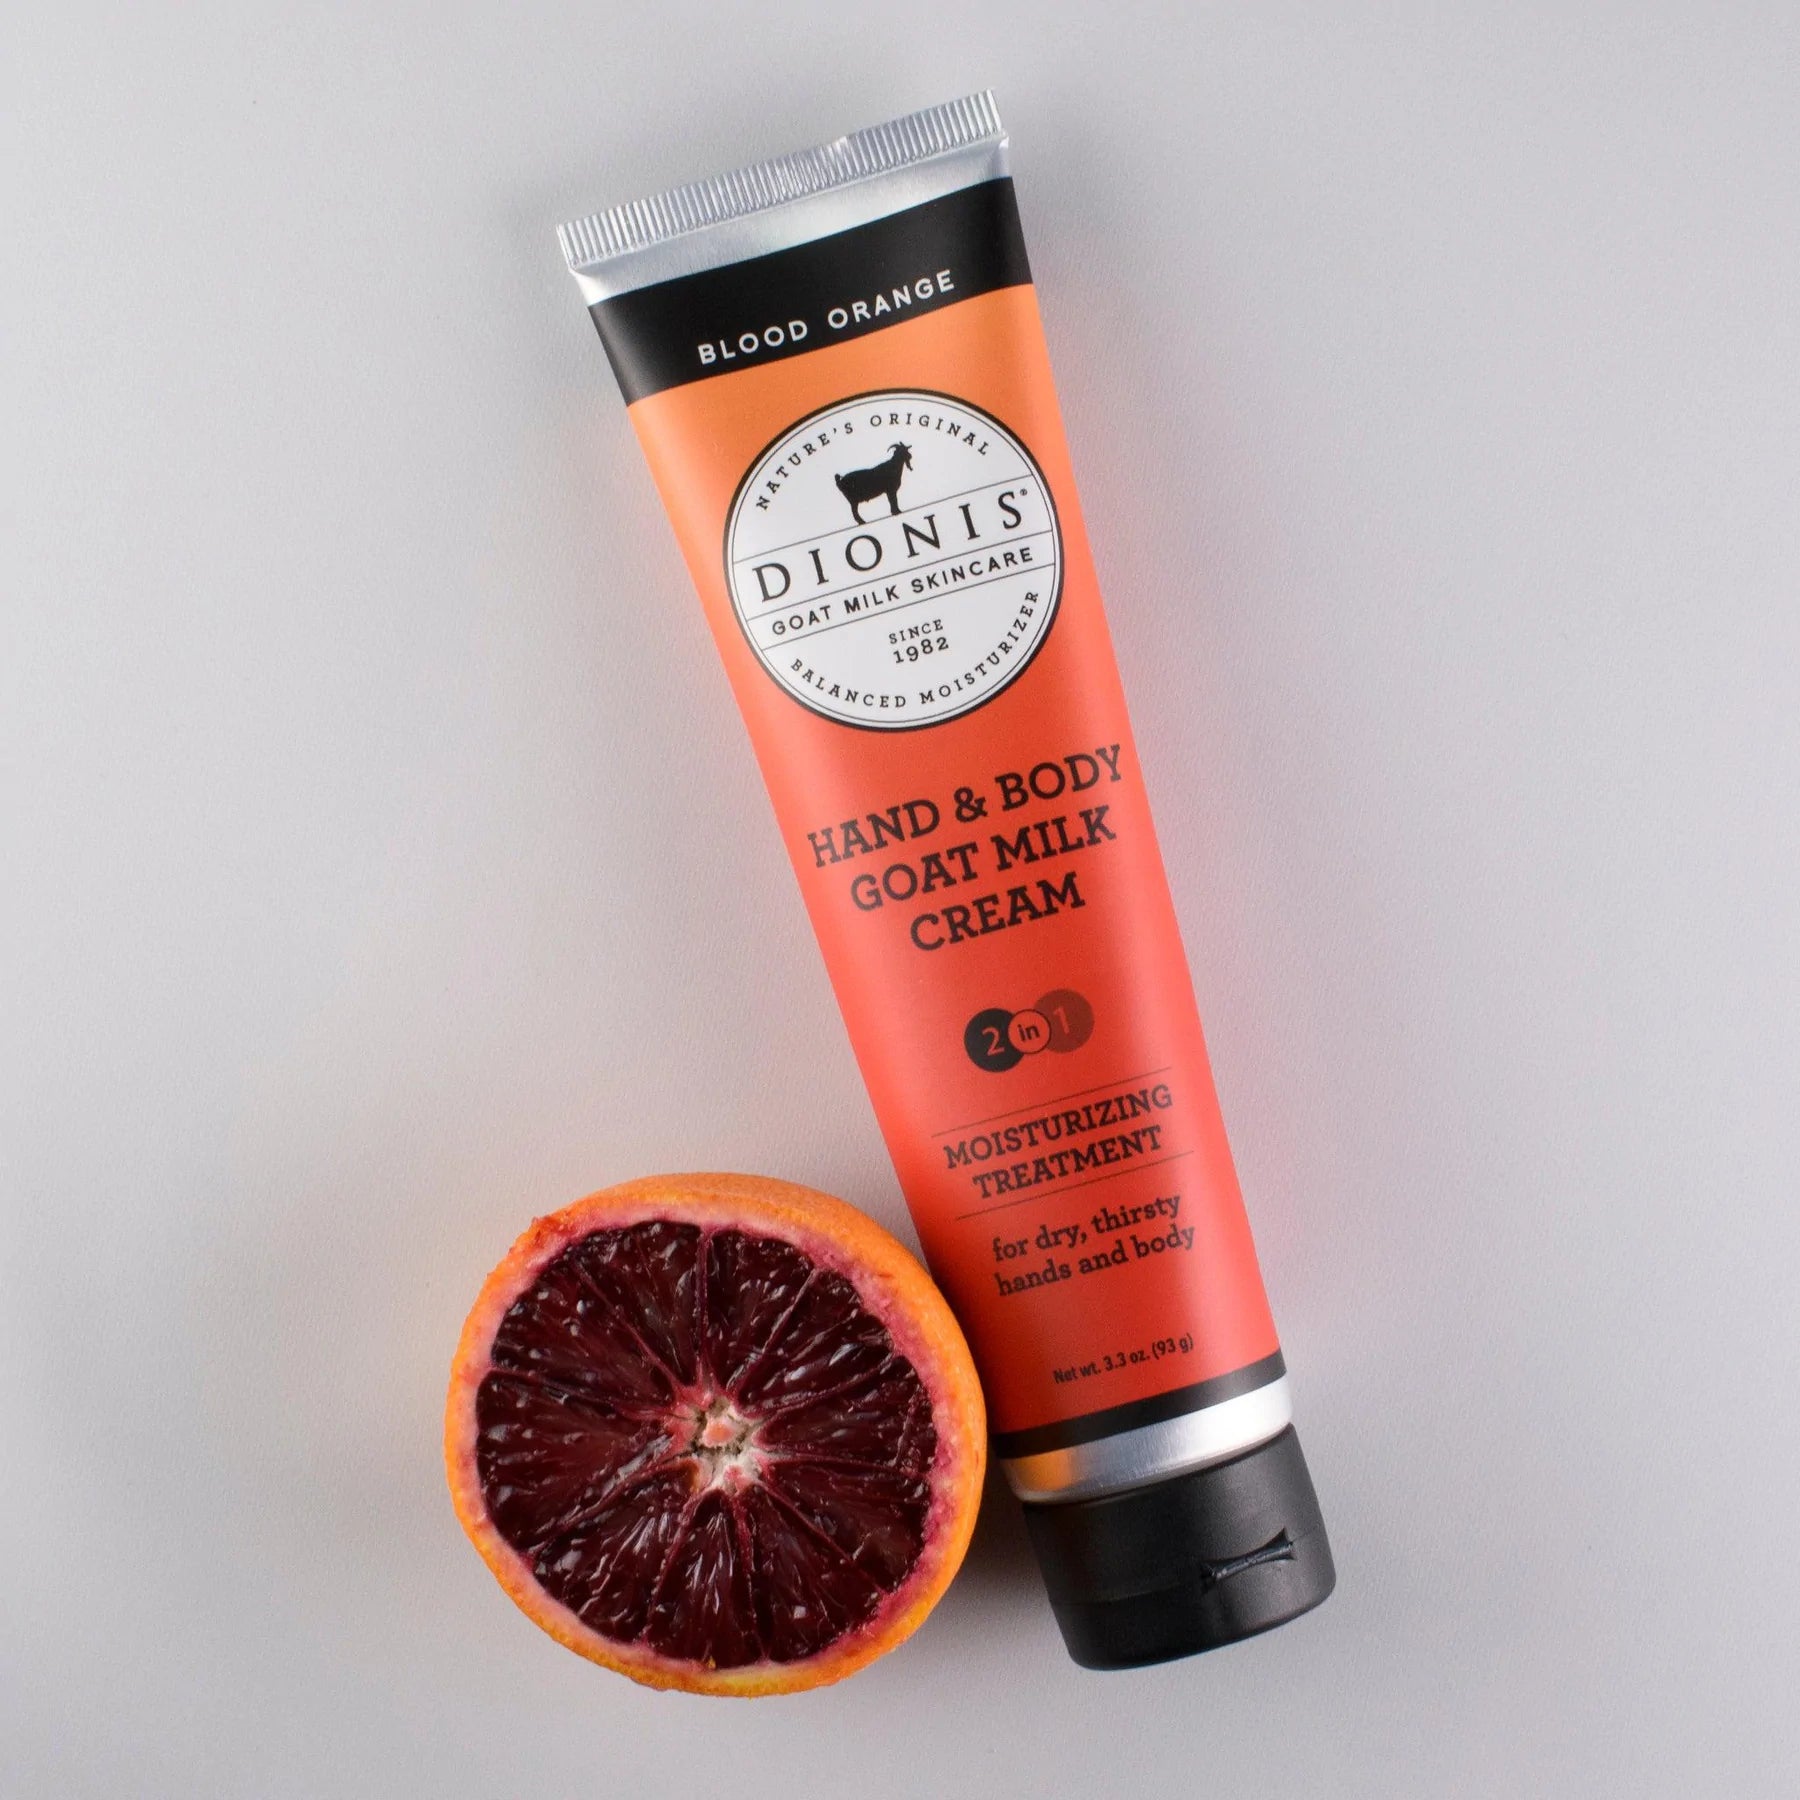 Dionis Hand & Body Cream - Blood Orange